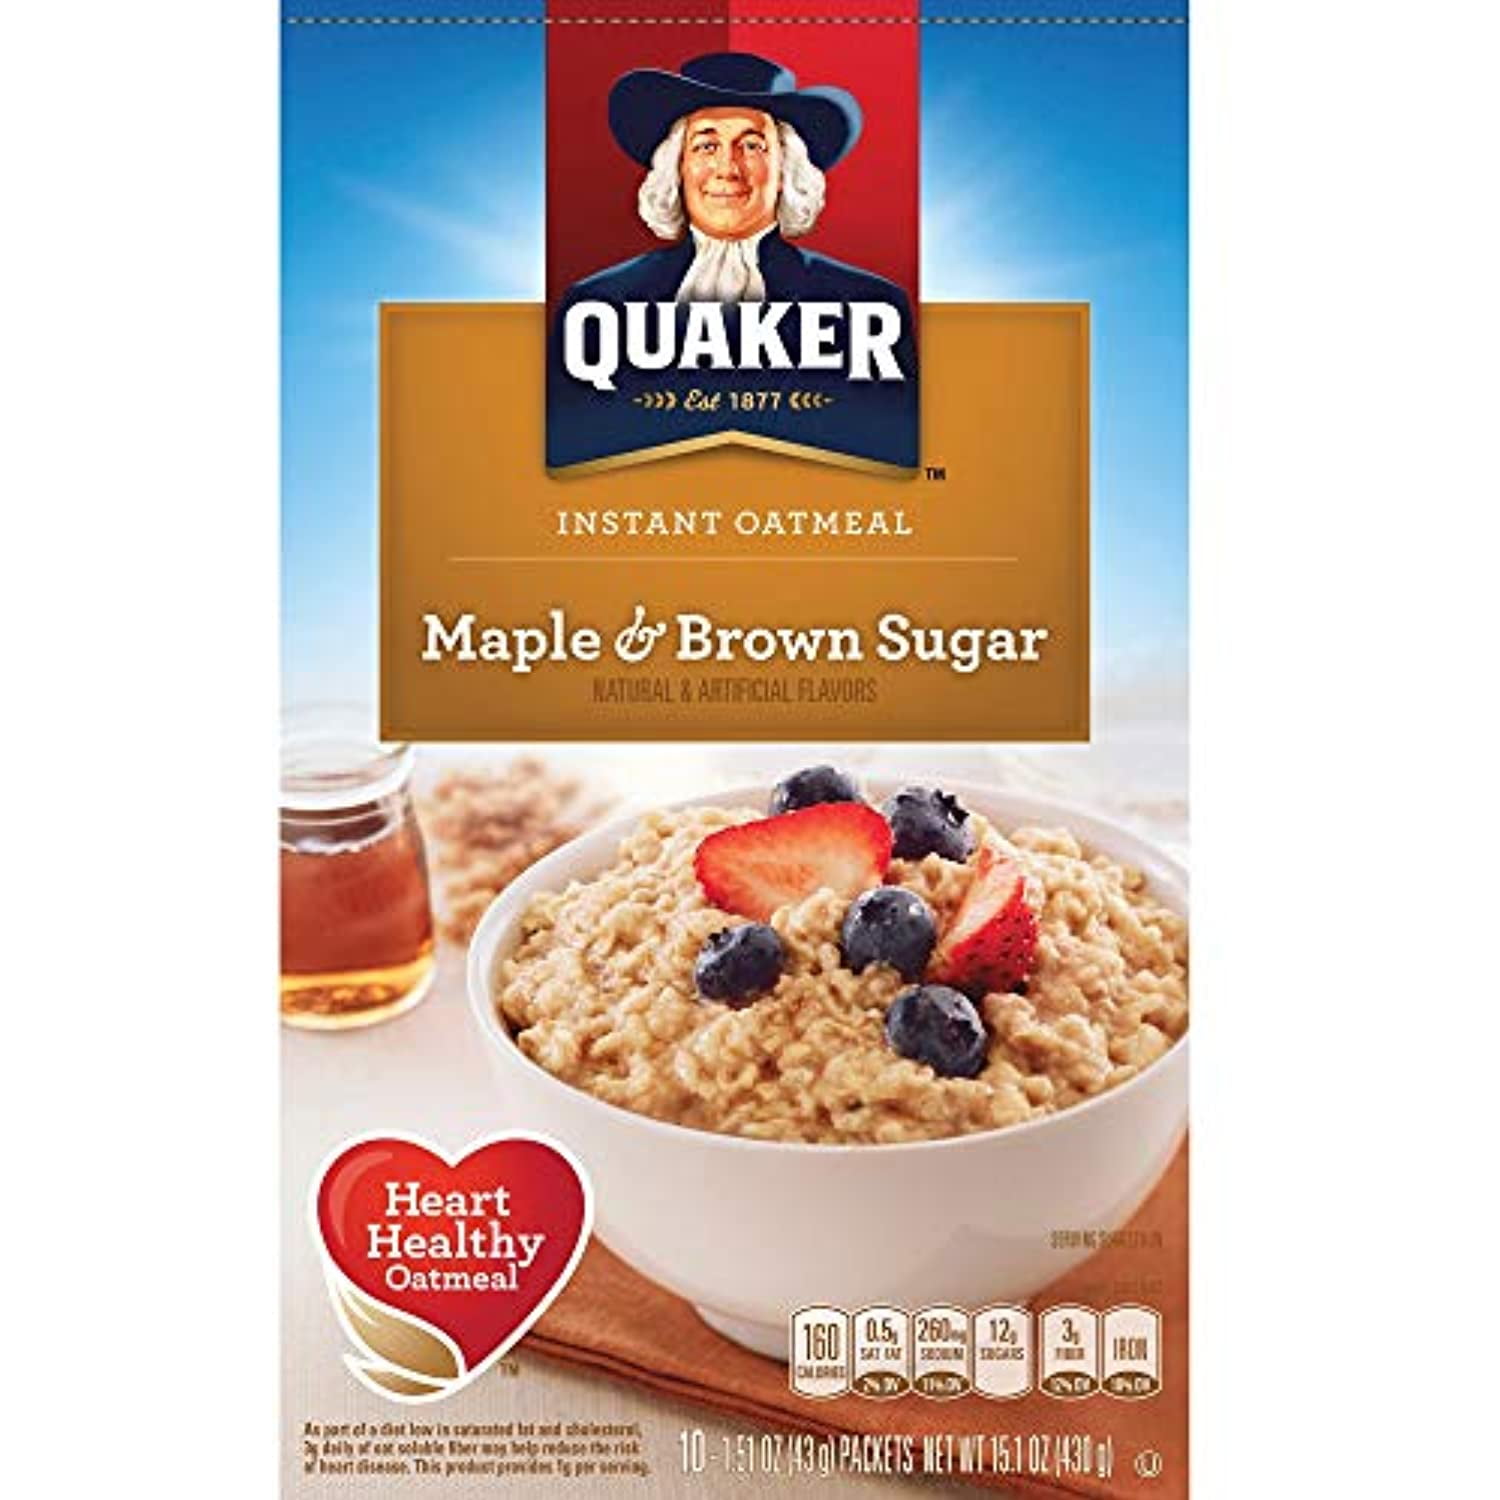 Quaker Quick 1-Minute Oatmeal, 10 Lb